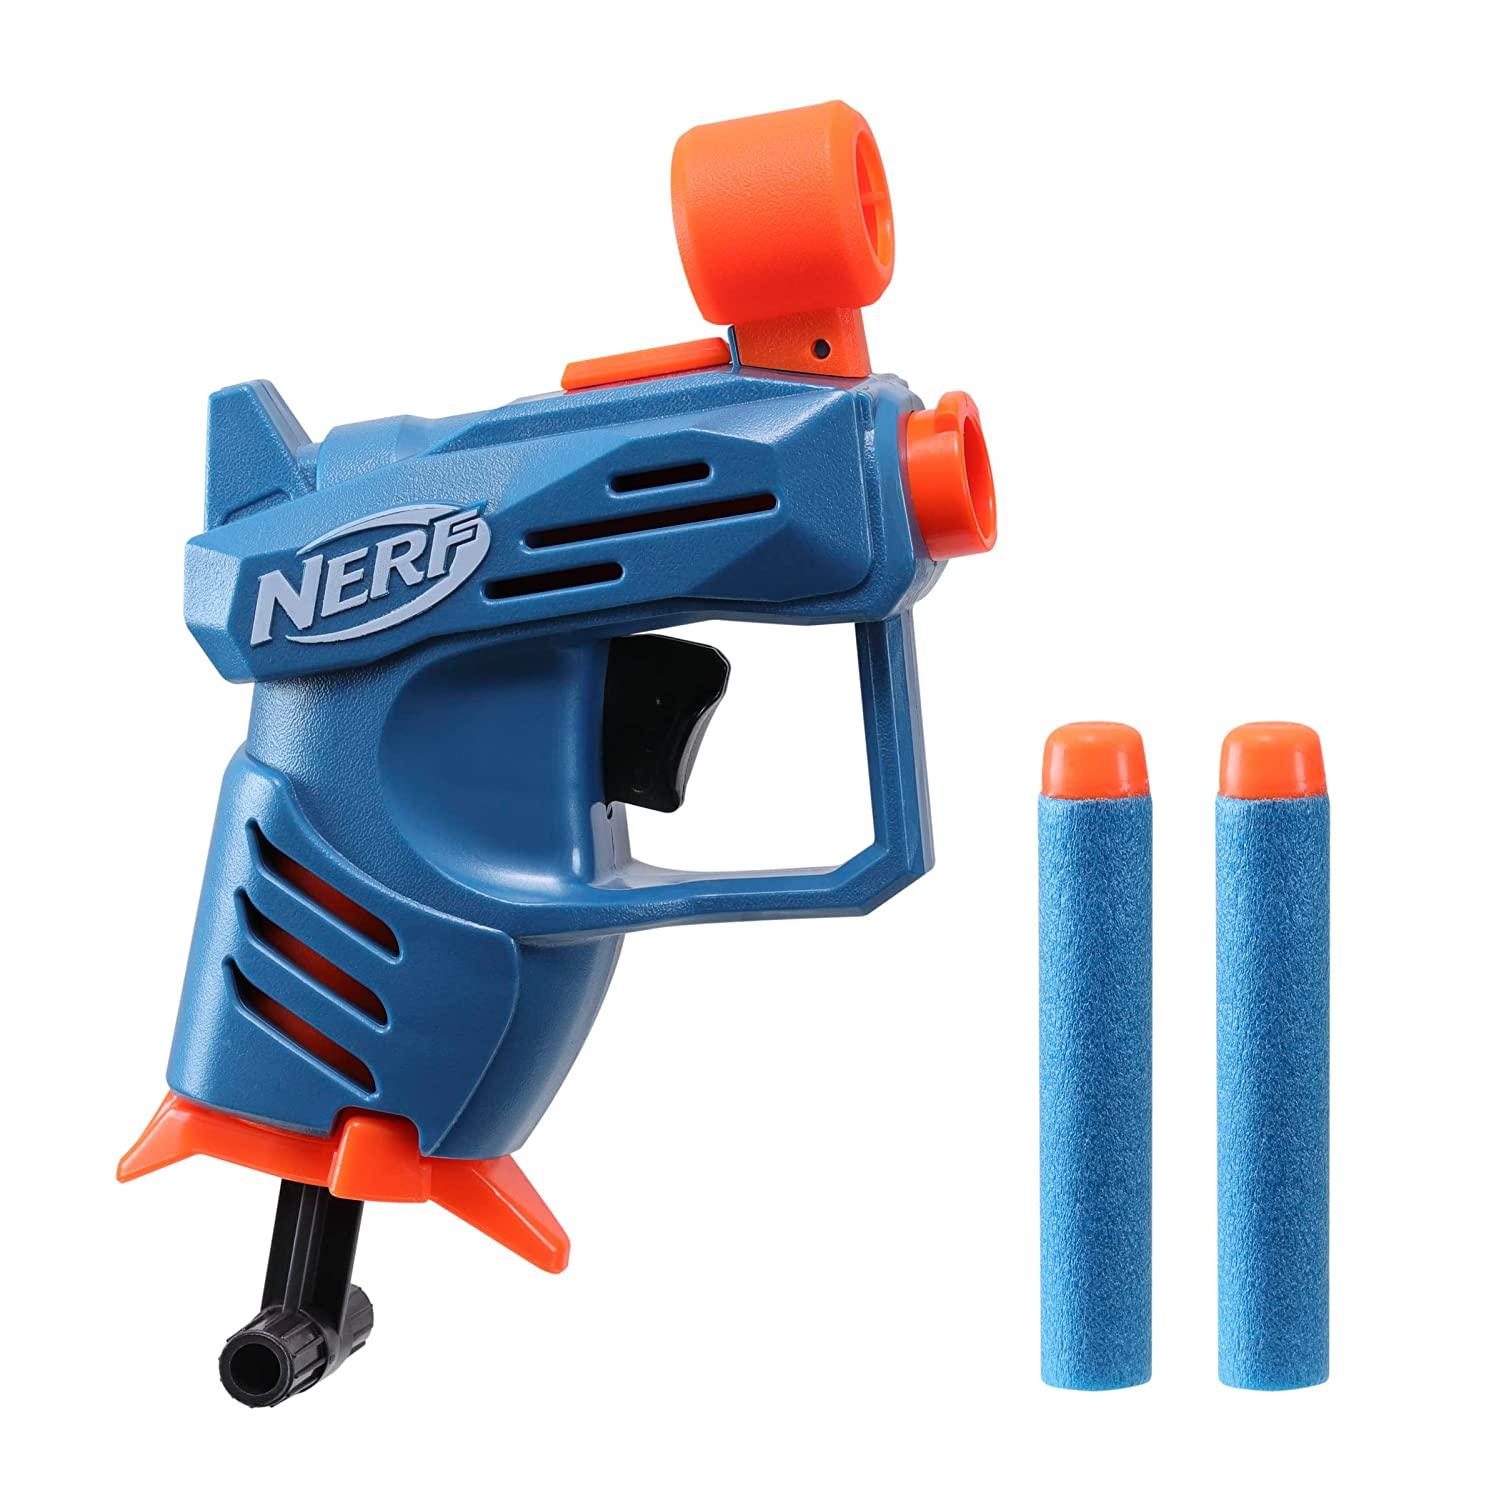 Buy NERF Elite 2.0 Echo CS-10 Toy Blaster, Online India - MM TOYS